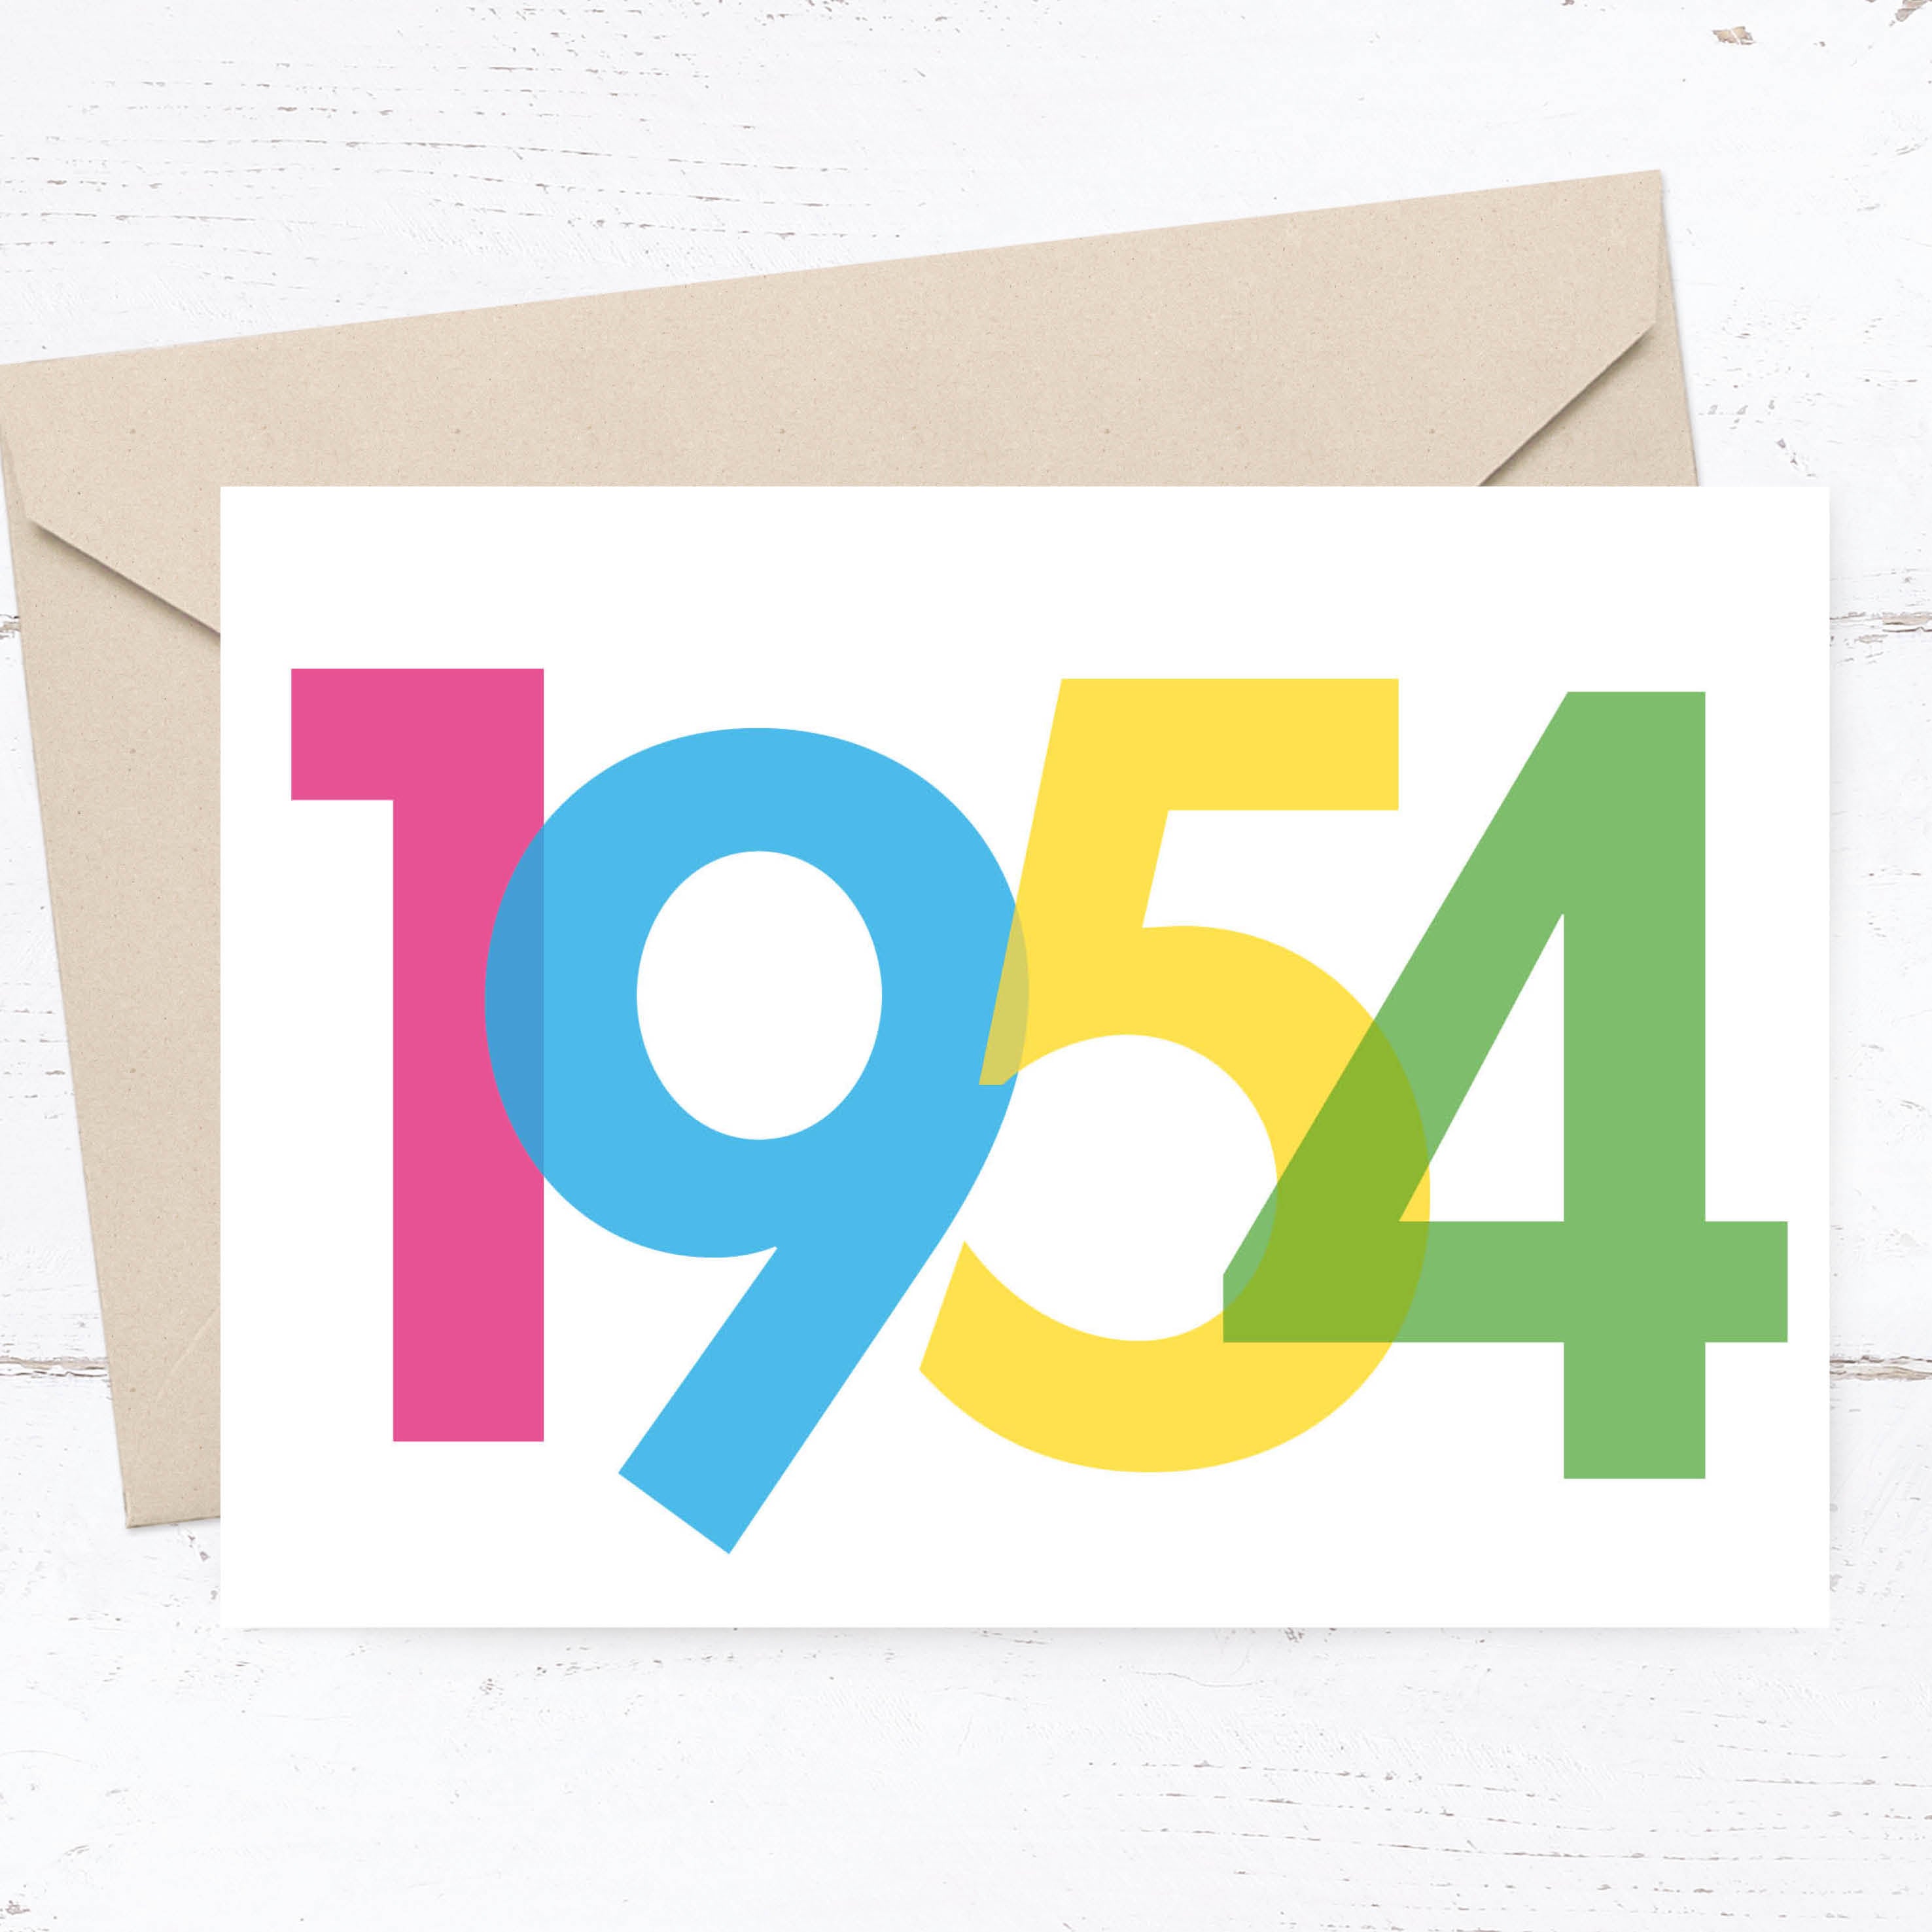 Einladung zum 70. Geburtstag: Jahrgang 1954 Individuelle Einladung